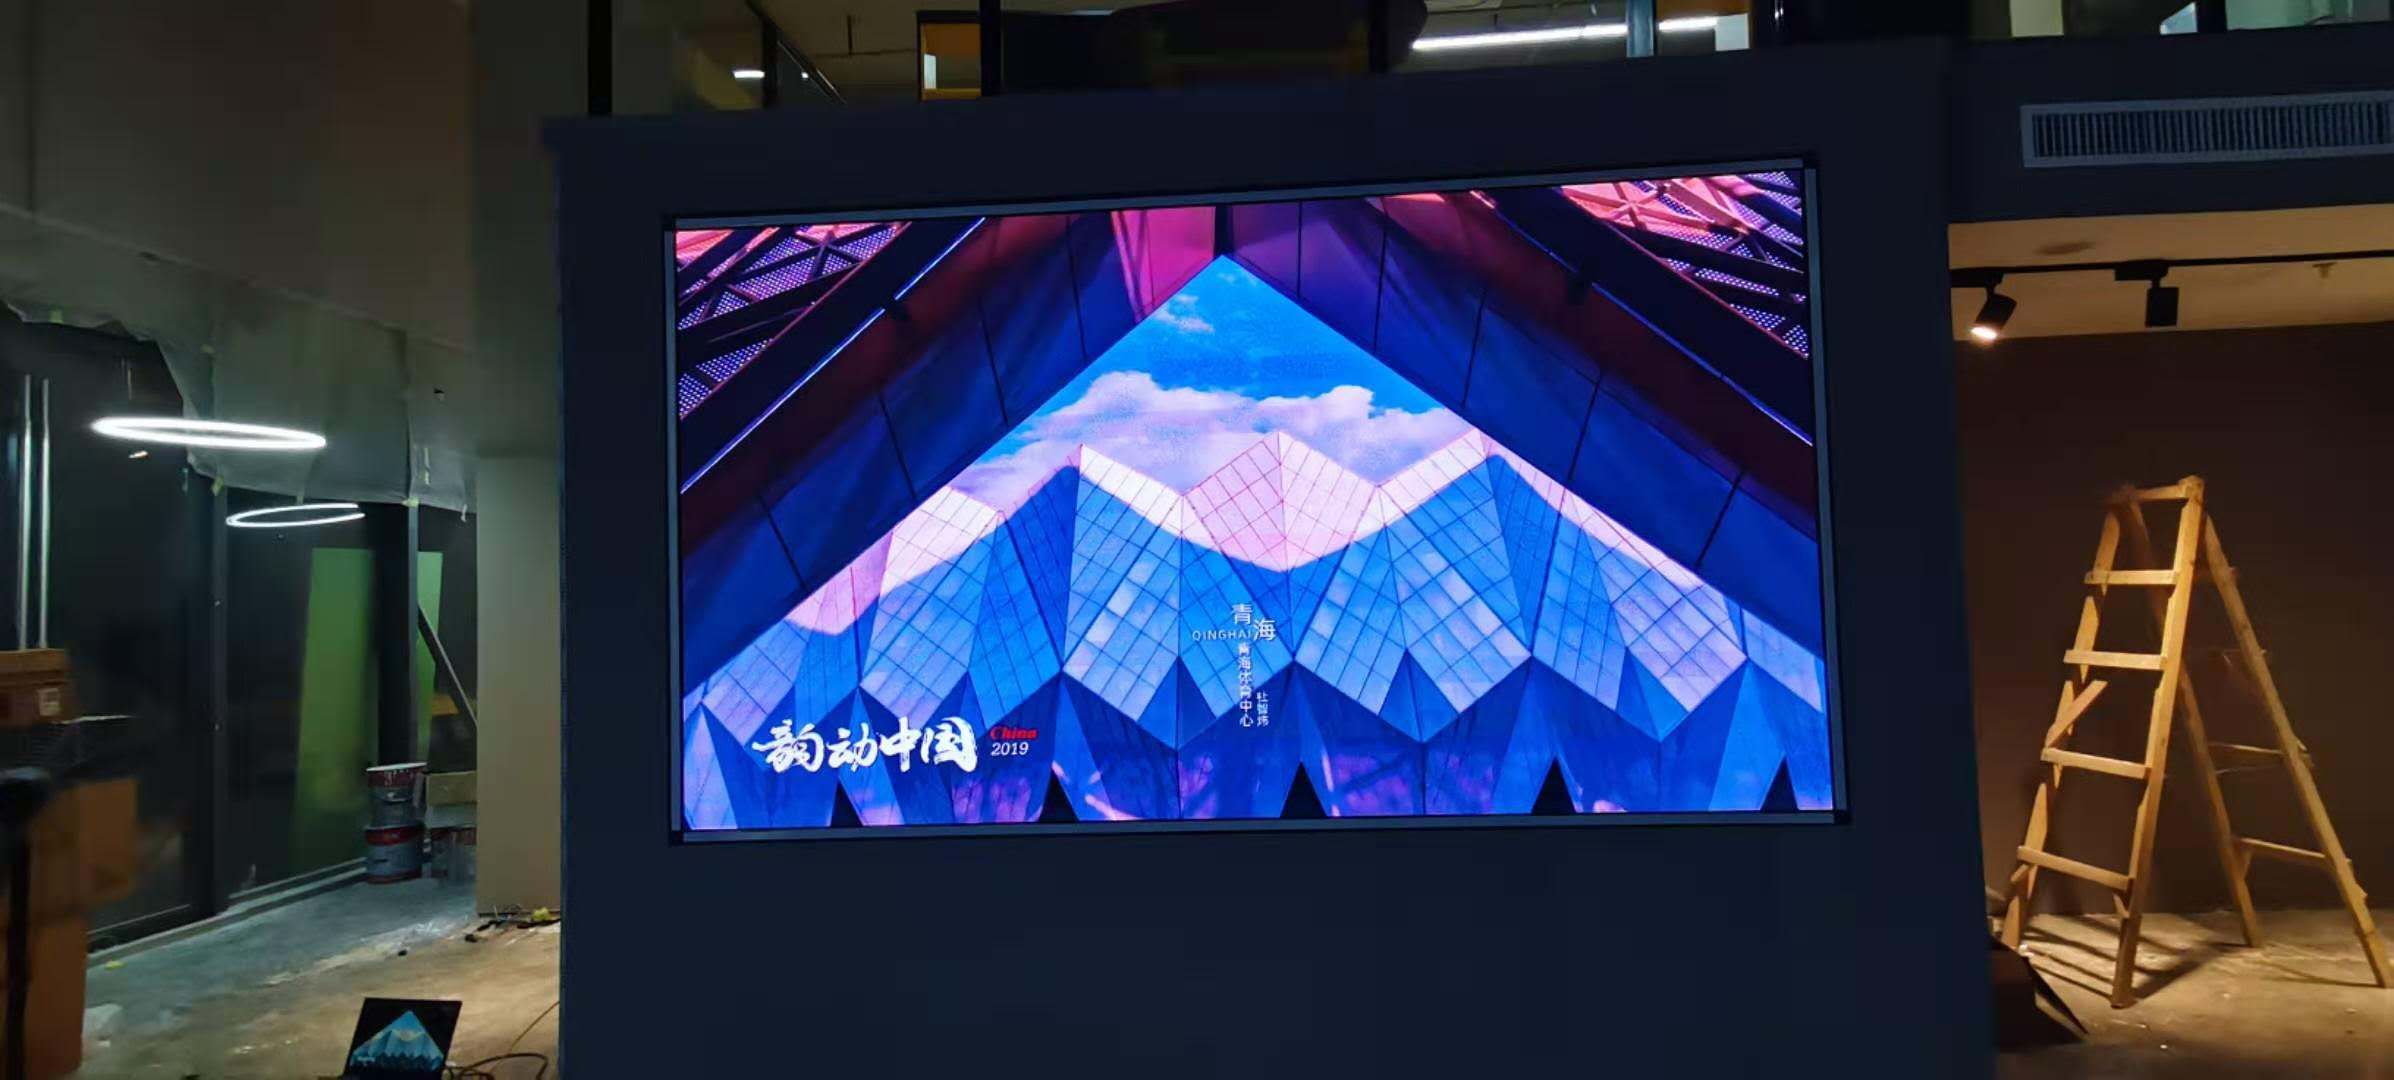 P2.5室內全彩LED顯示屏-壁掛支架安裝-東莞市松山湖管委會中集智谷